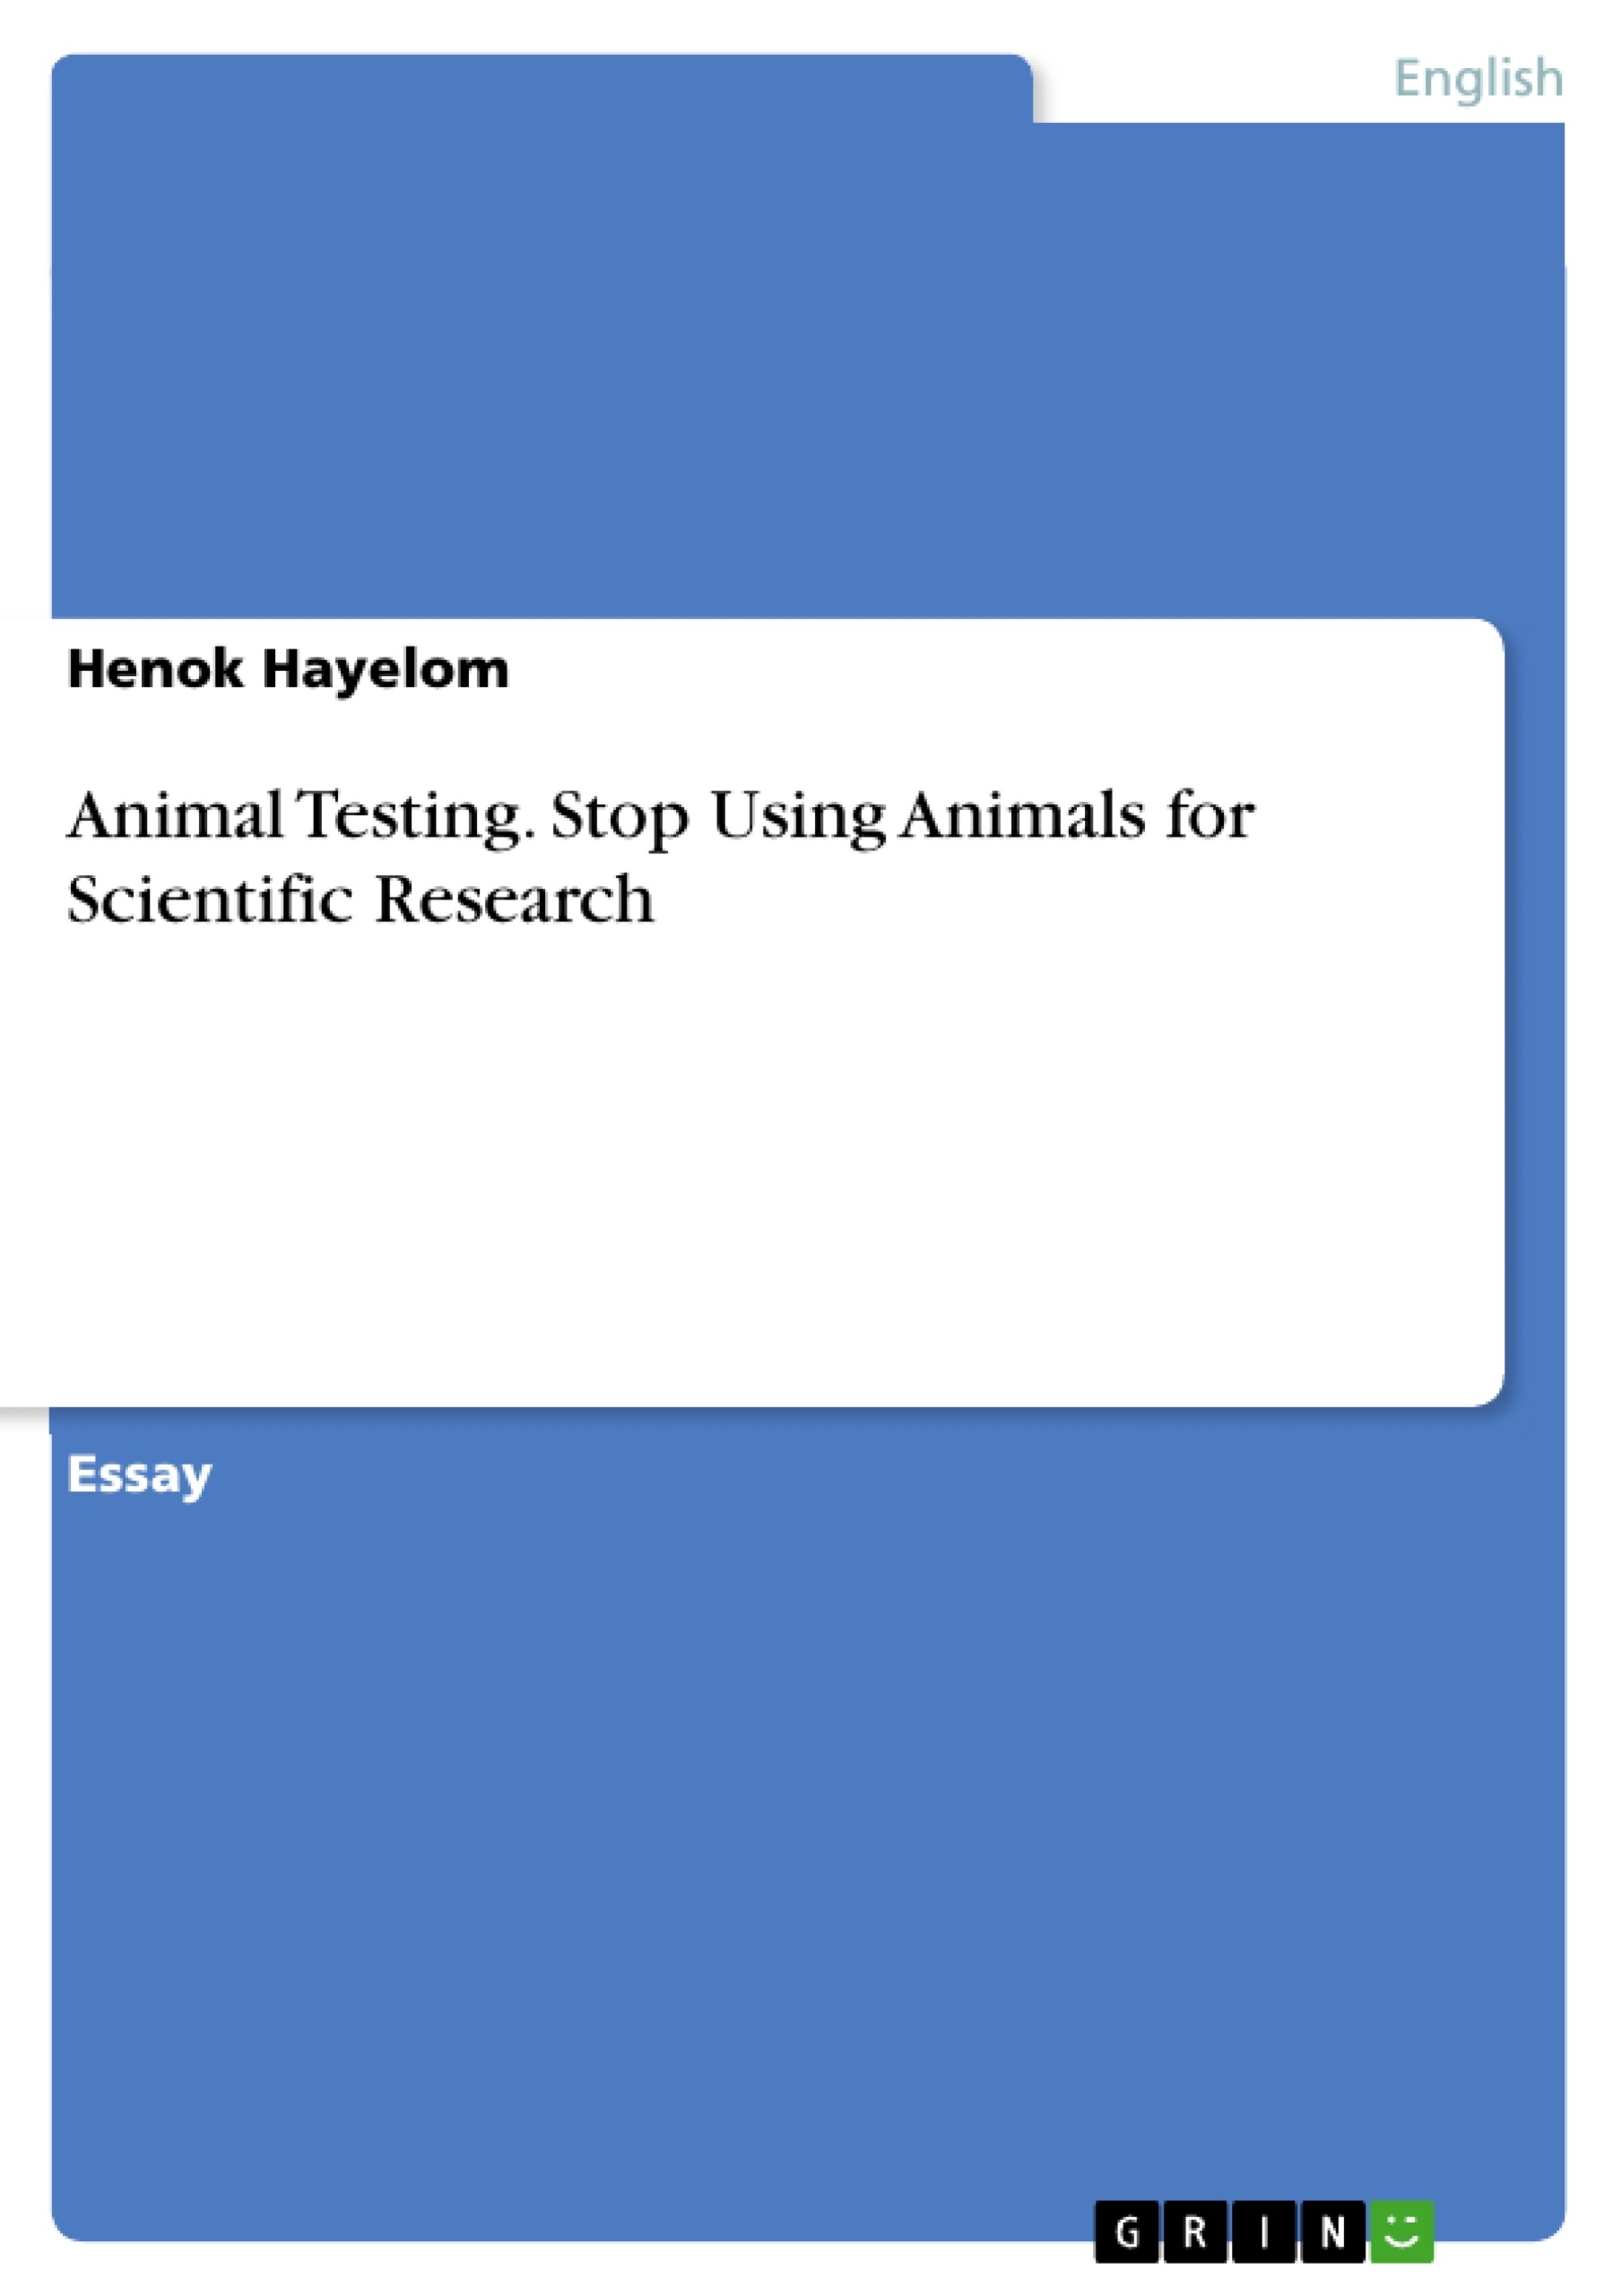 animal testing thesis statement